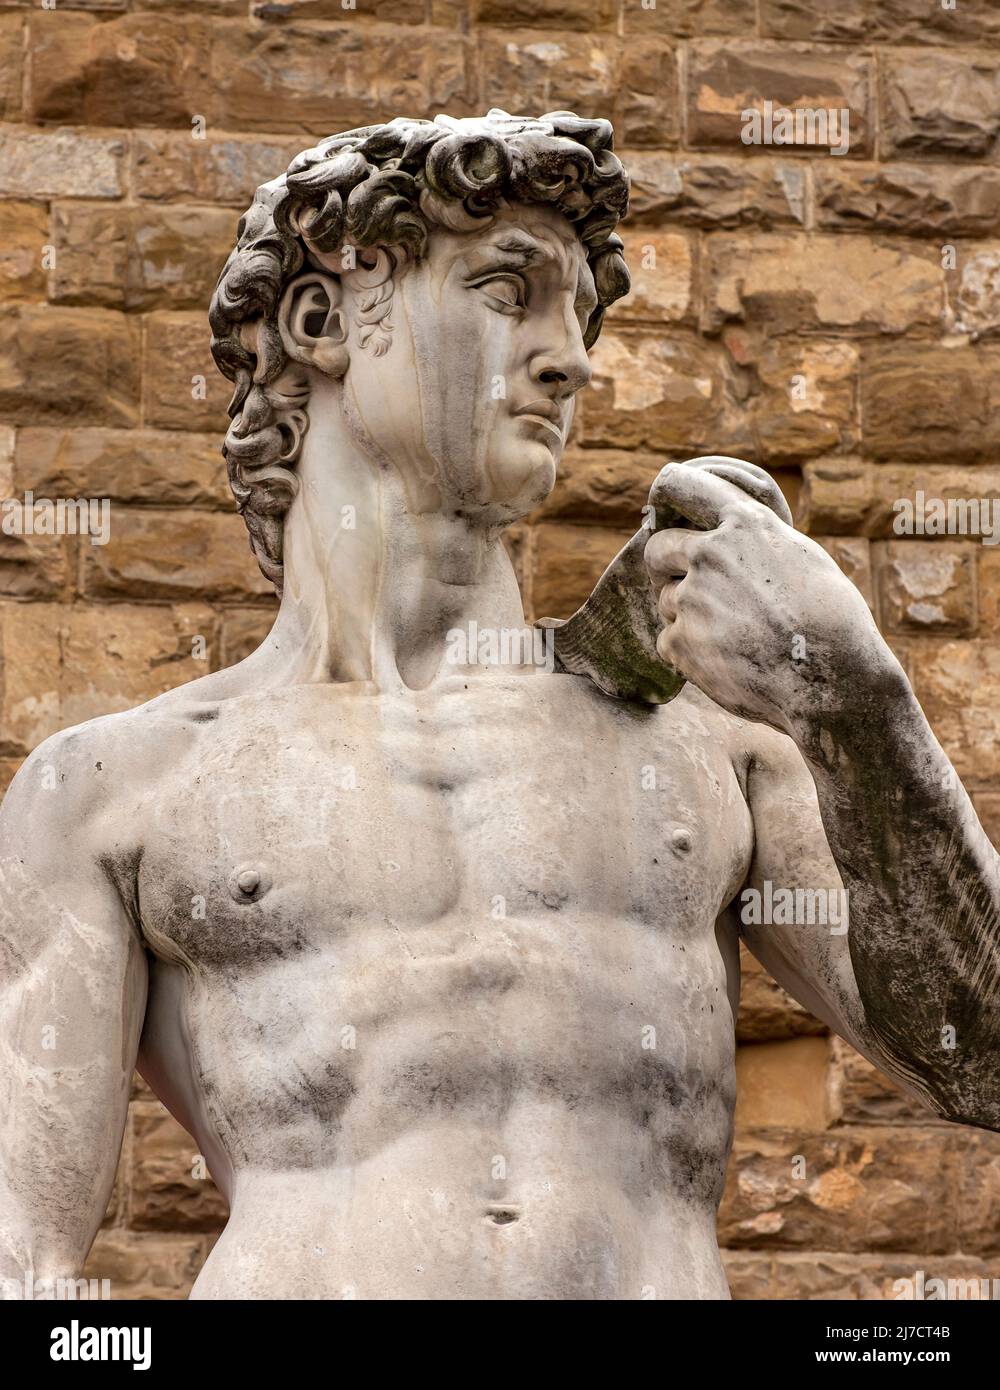 Copy of Michelangelo's statue of David at Piazza della Signoria, Florence, Italy Stock Photo